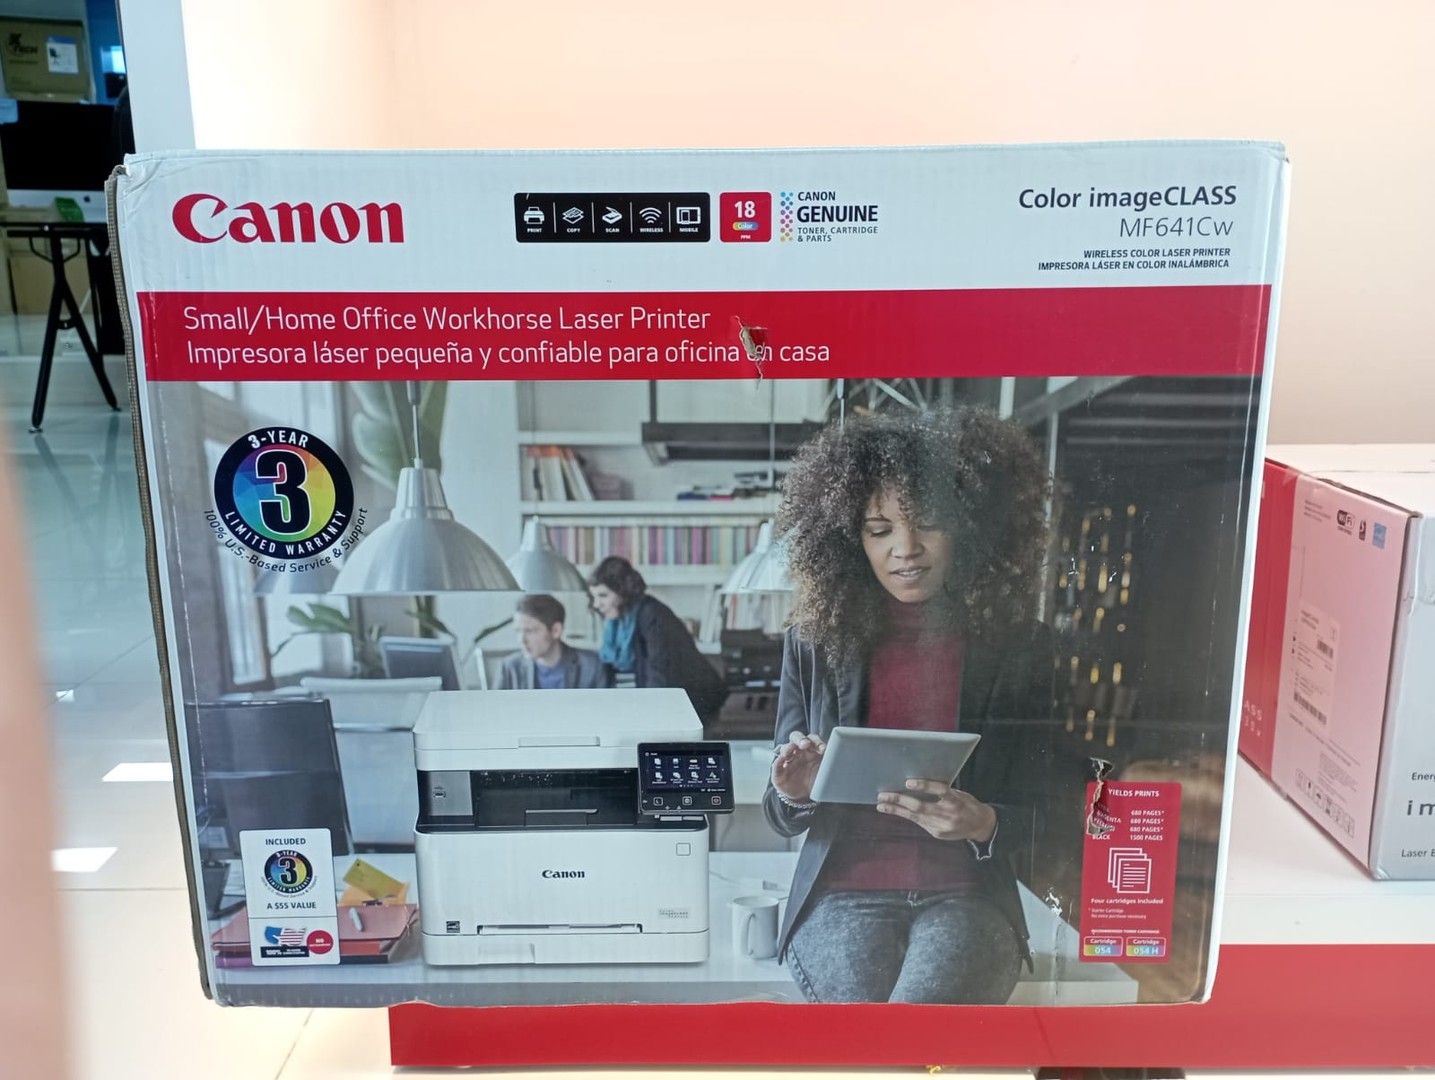 impresoras y scanners - Impresora Canon Laser color imagenclass MF641CW multifuncional